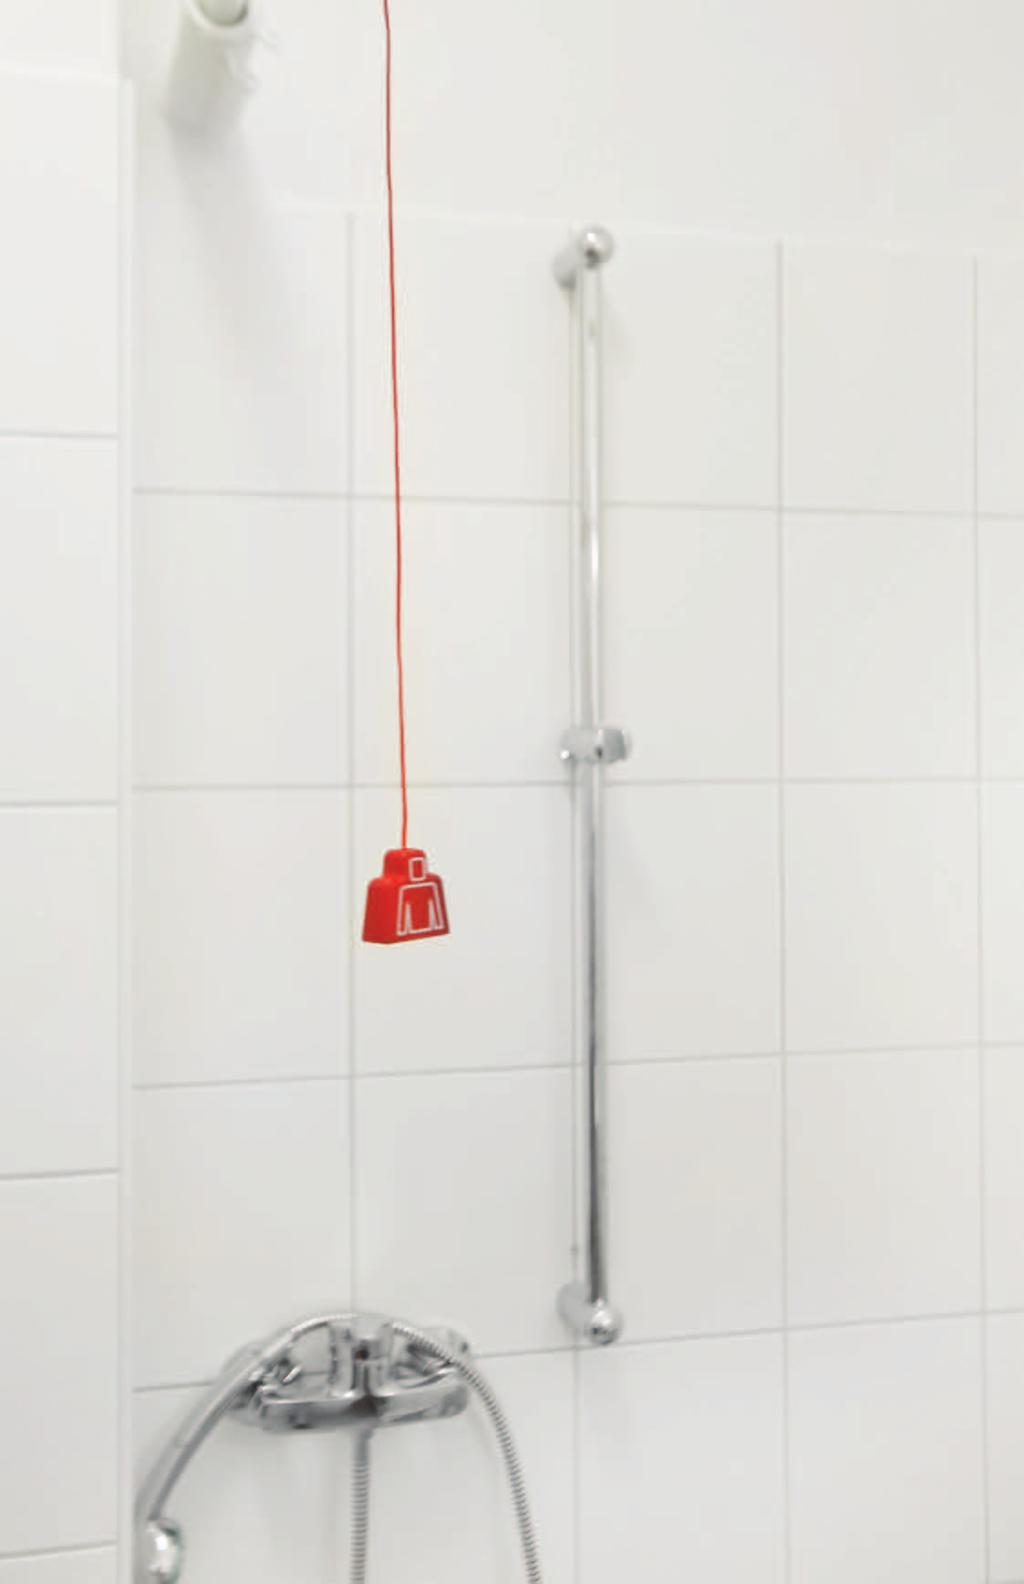 ausgelöst. Innerhalb des WC s wird die Rufauslösung durch die rote Beruhigungslampe des Zugtasters und außerhalb durch Aufleuchten der roten LED-Leuchte des über der WC-Tür angeordneten Rufmoduls bzw.